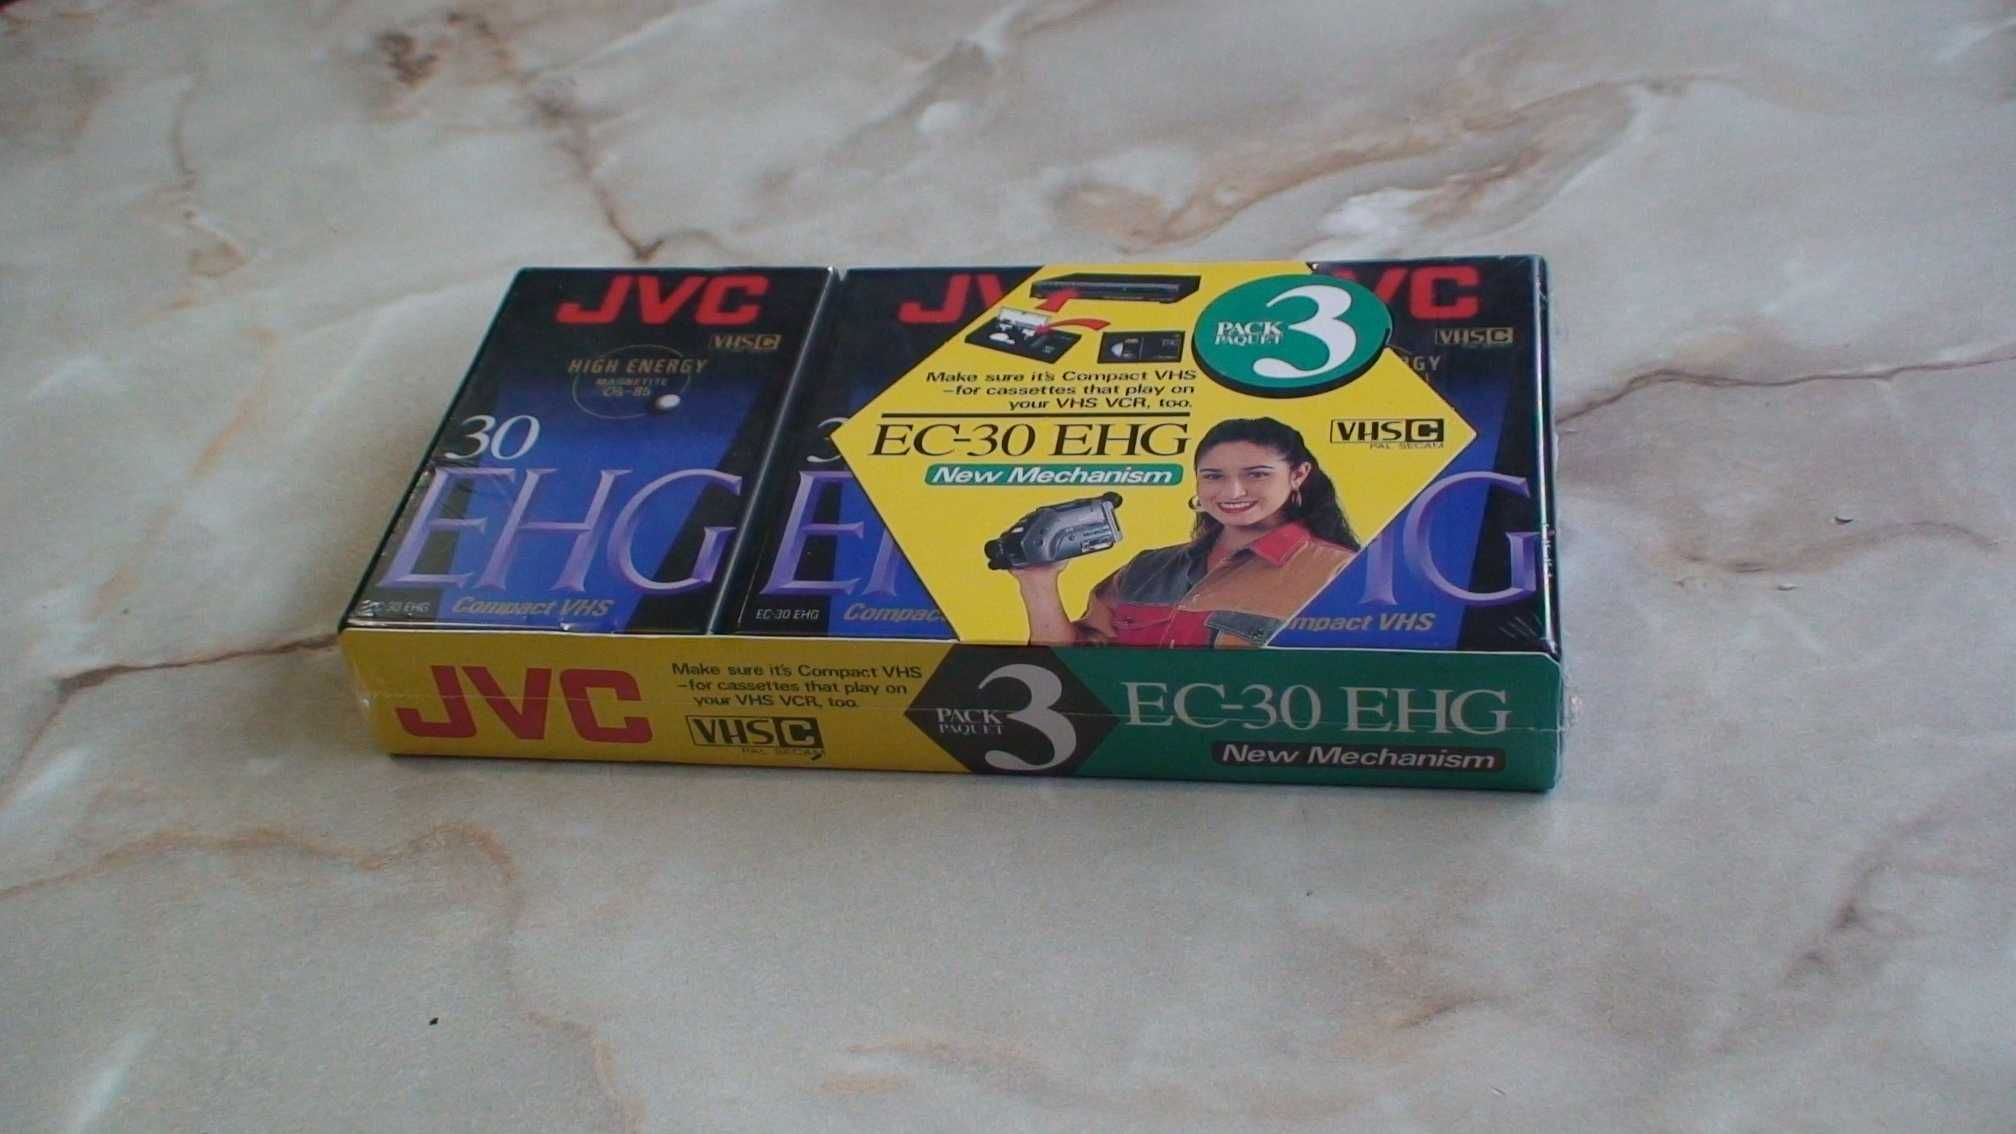 Відеокасети JVC EC-30 EHG 3 шт.